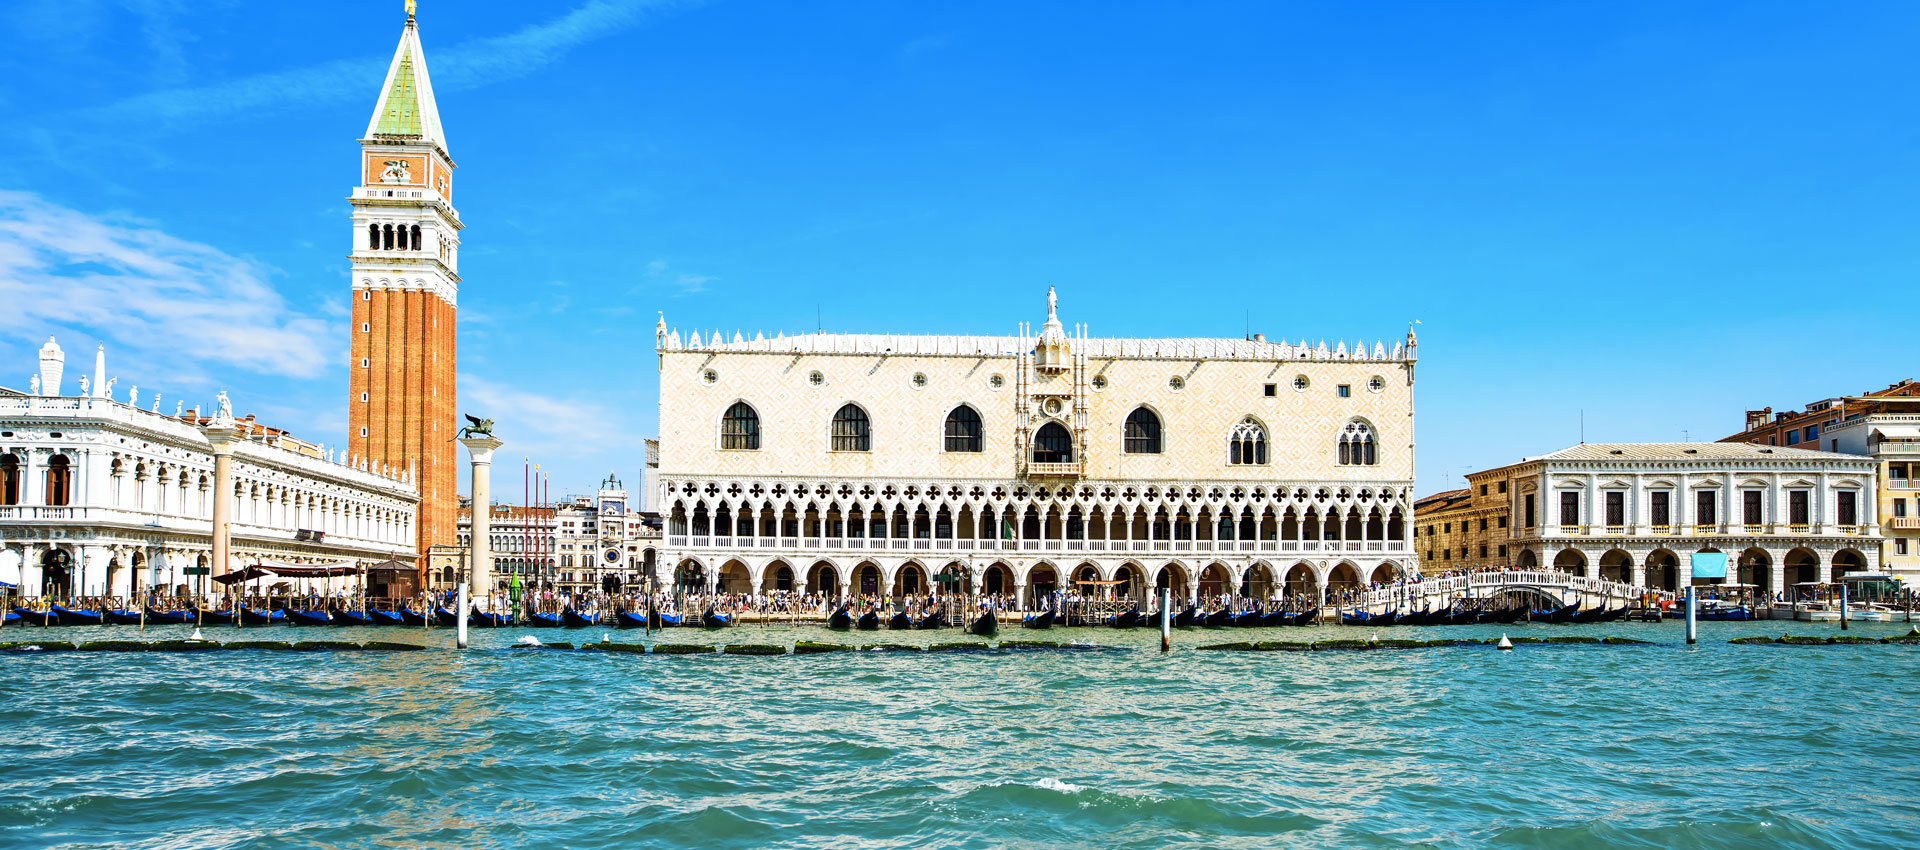 Caccia al Tesoro a Venezia